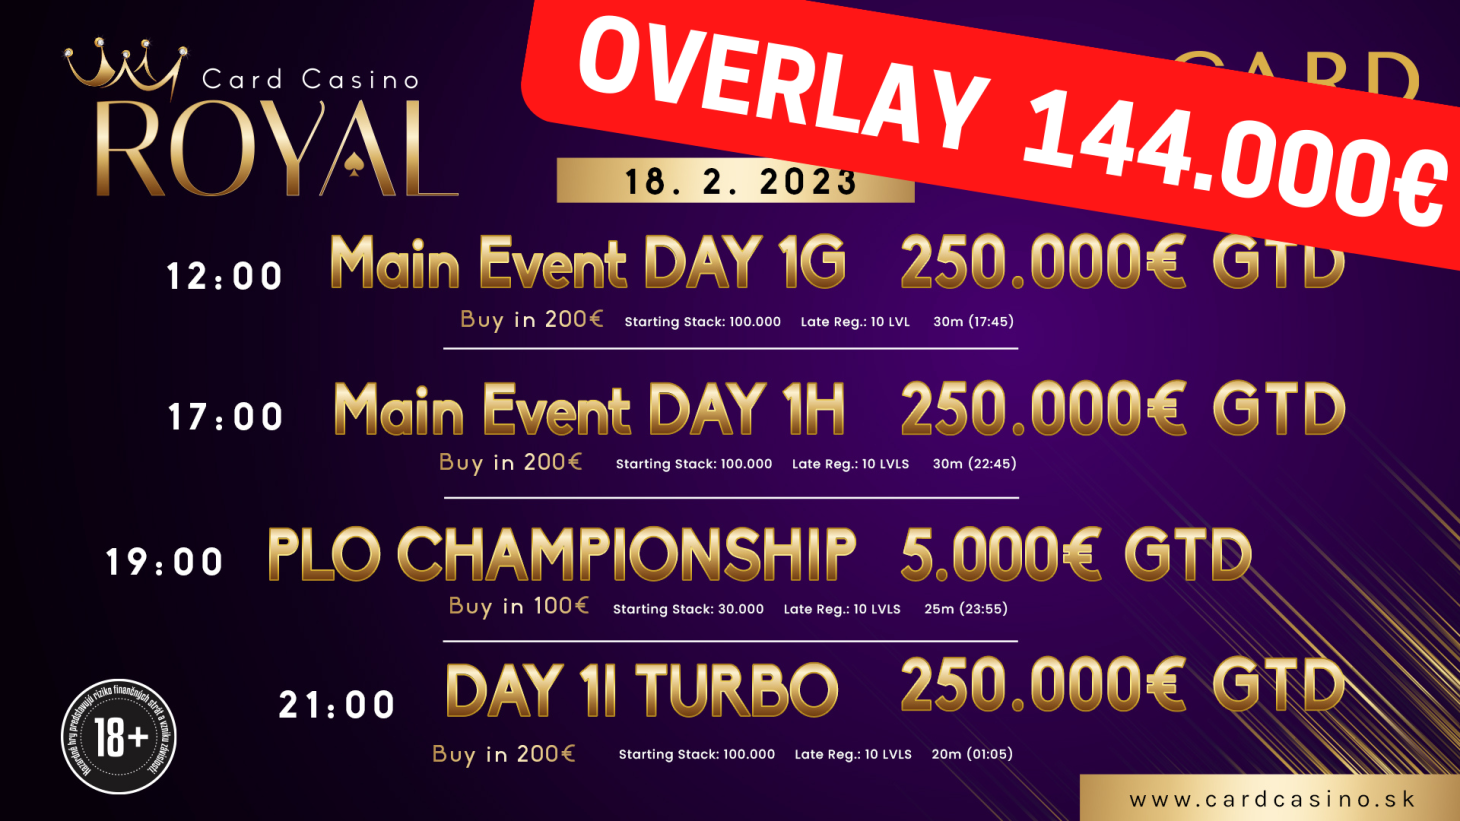 Das Royal wird wieder einmal die Pokertische füllen. Im Februar stehen 250.000 € GTD zu Buche!